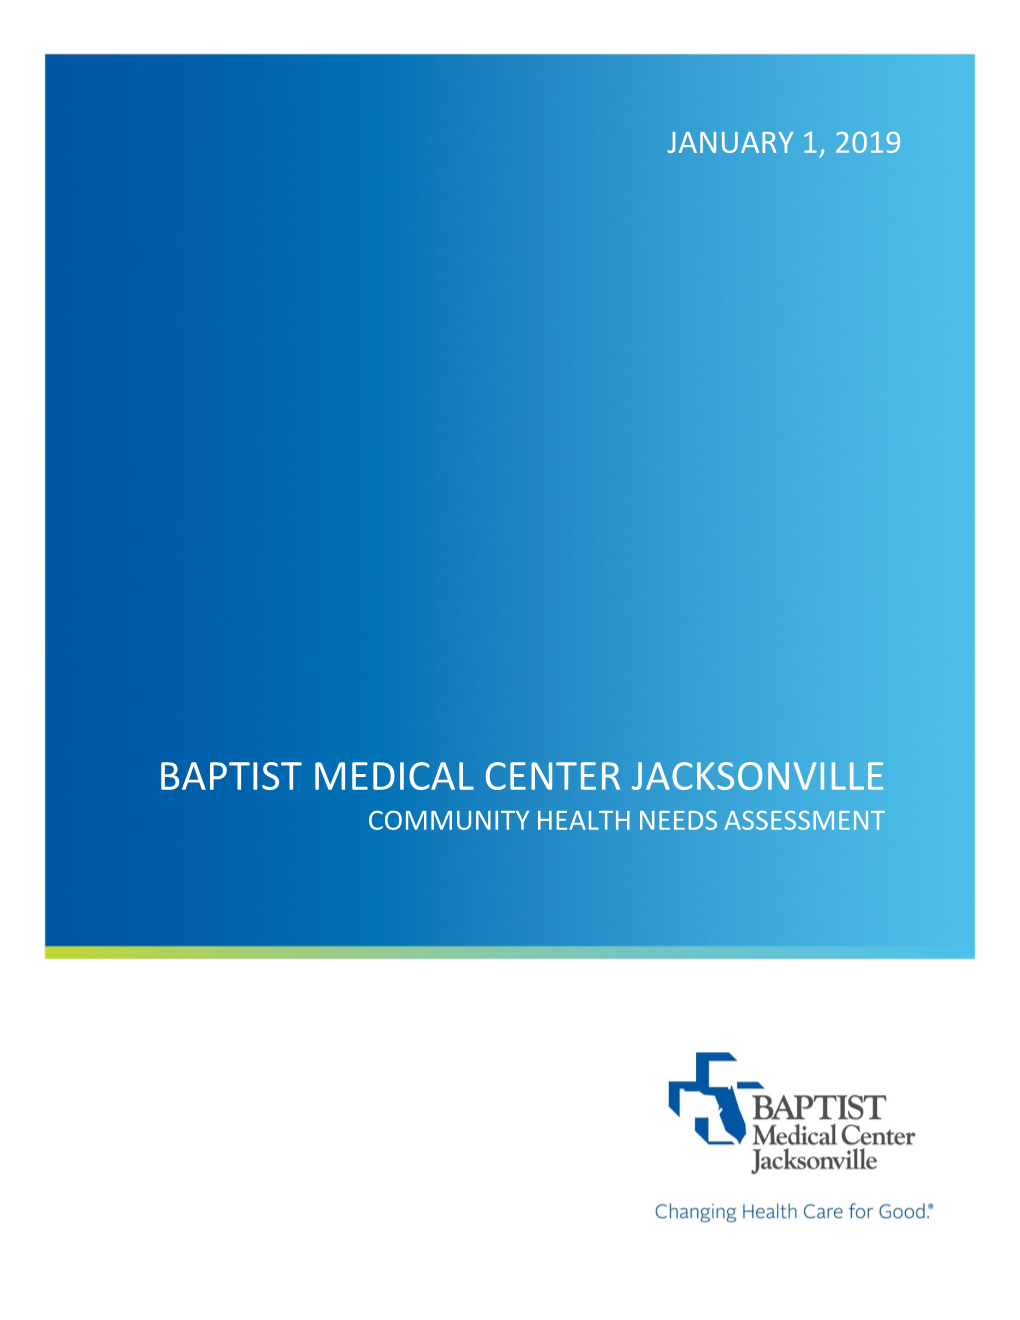 Baptist Medical Center Jacksonville Community Health Needs Assessment